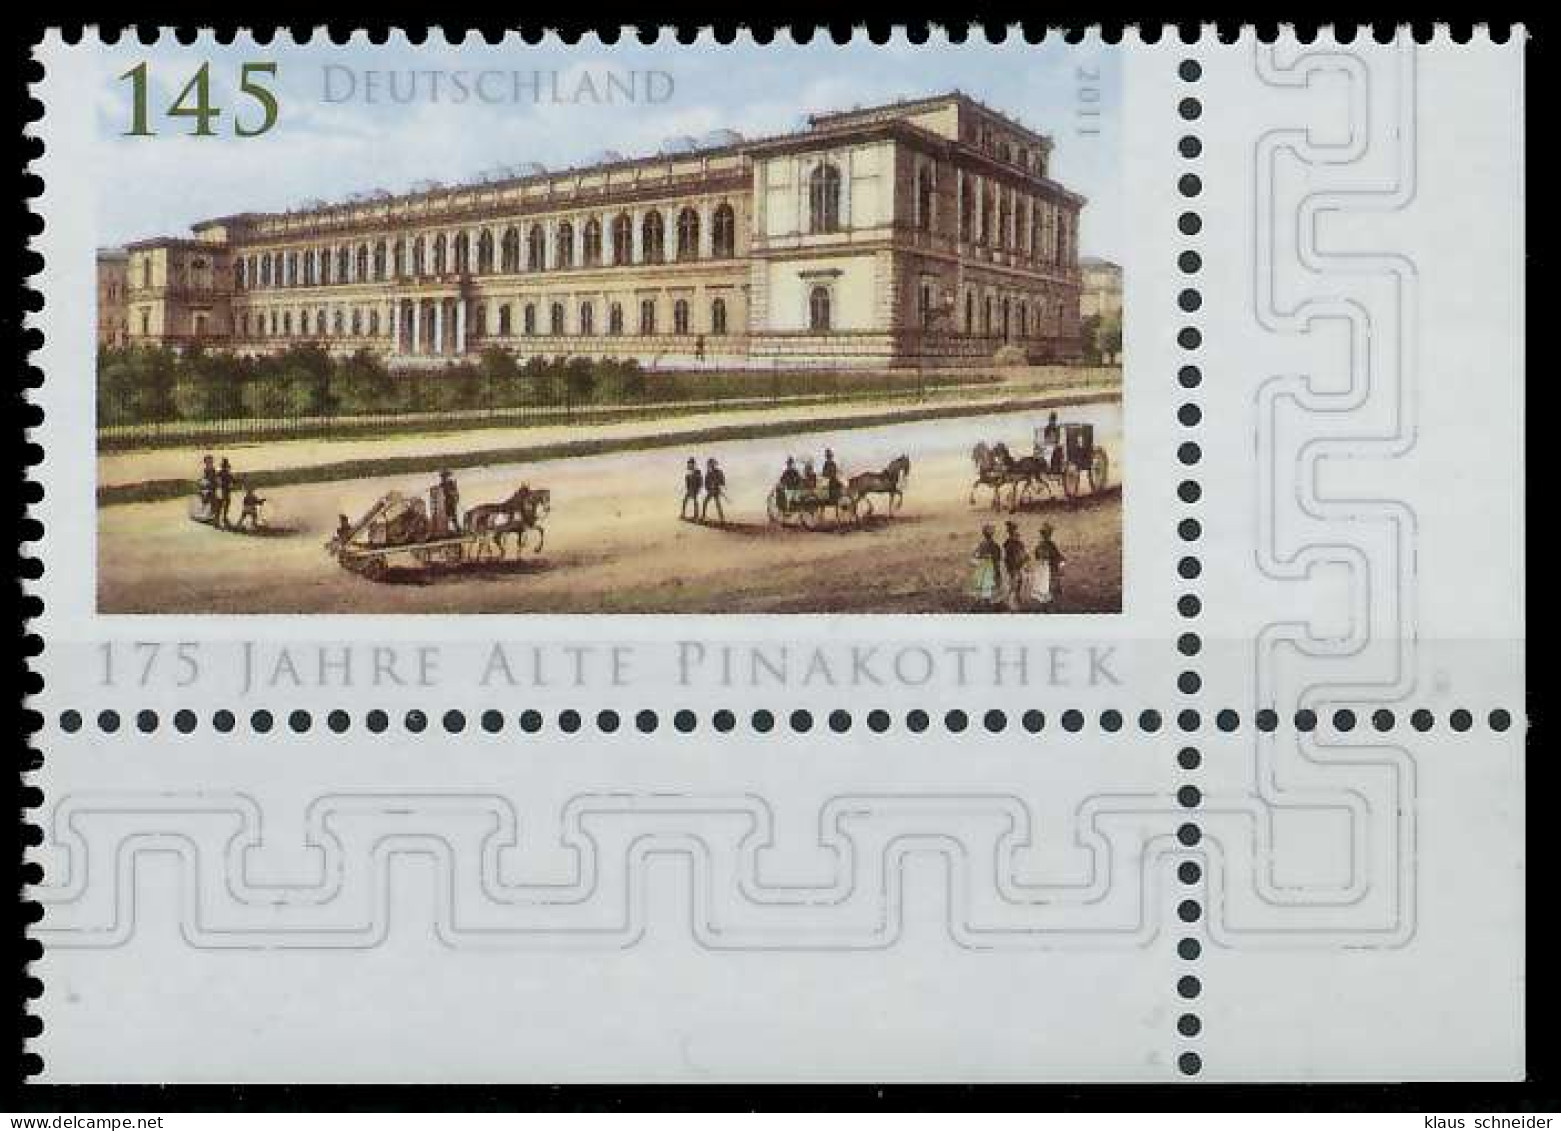 BRD BUND 2011 Nr 2893 Postfrisch ECKE-URE X32620A - Unused Stamps